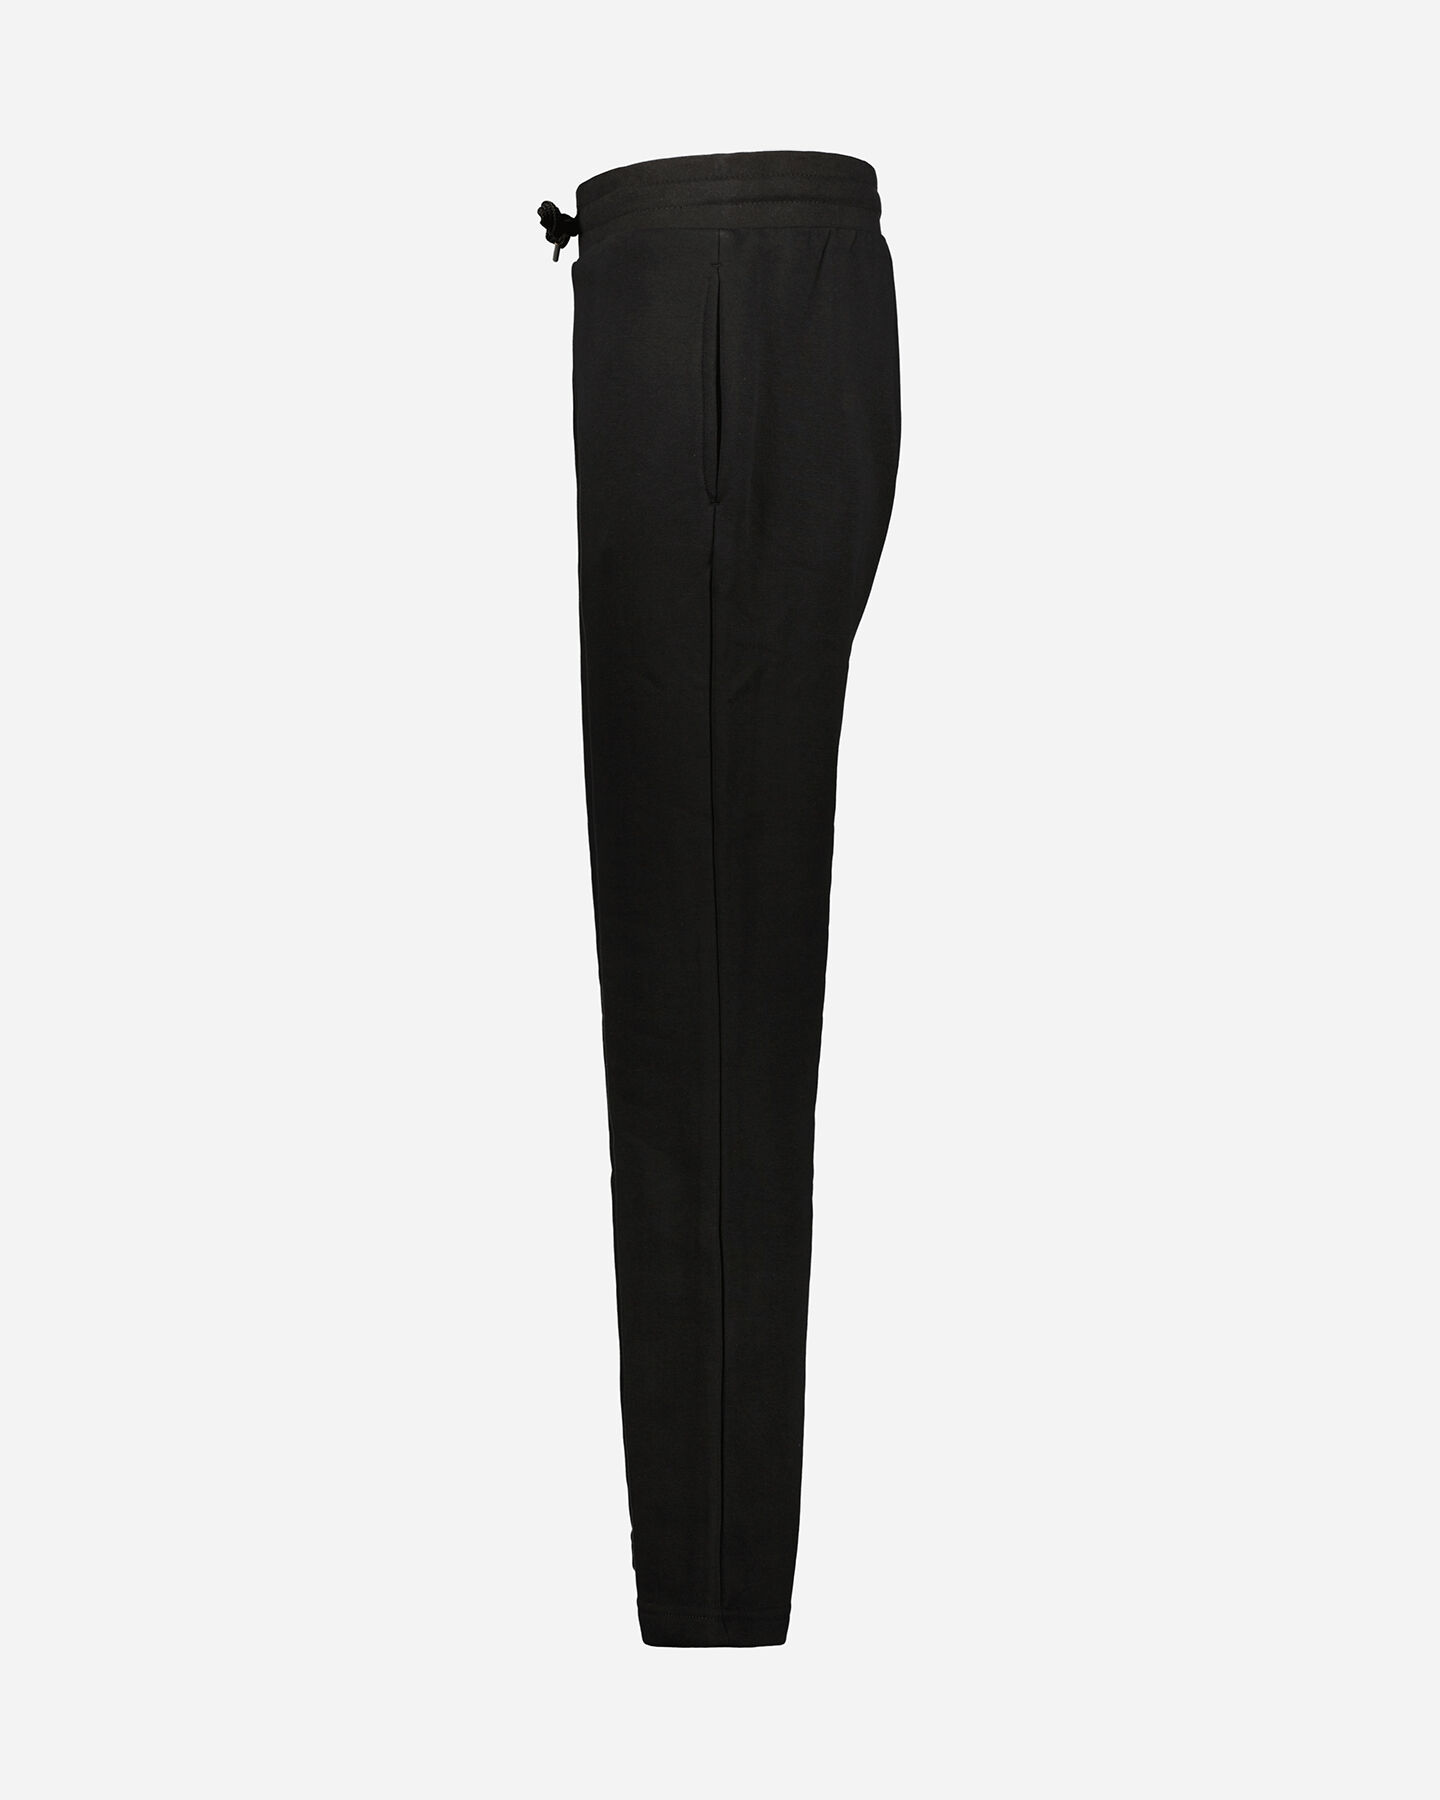  Pantalone ADMIRAL CLASSIC W S4106266|050|S scatto 1